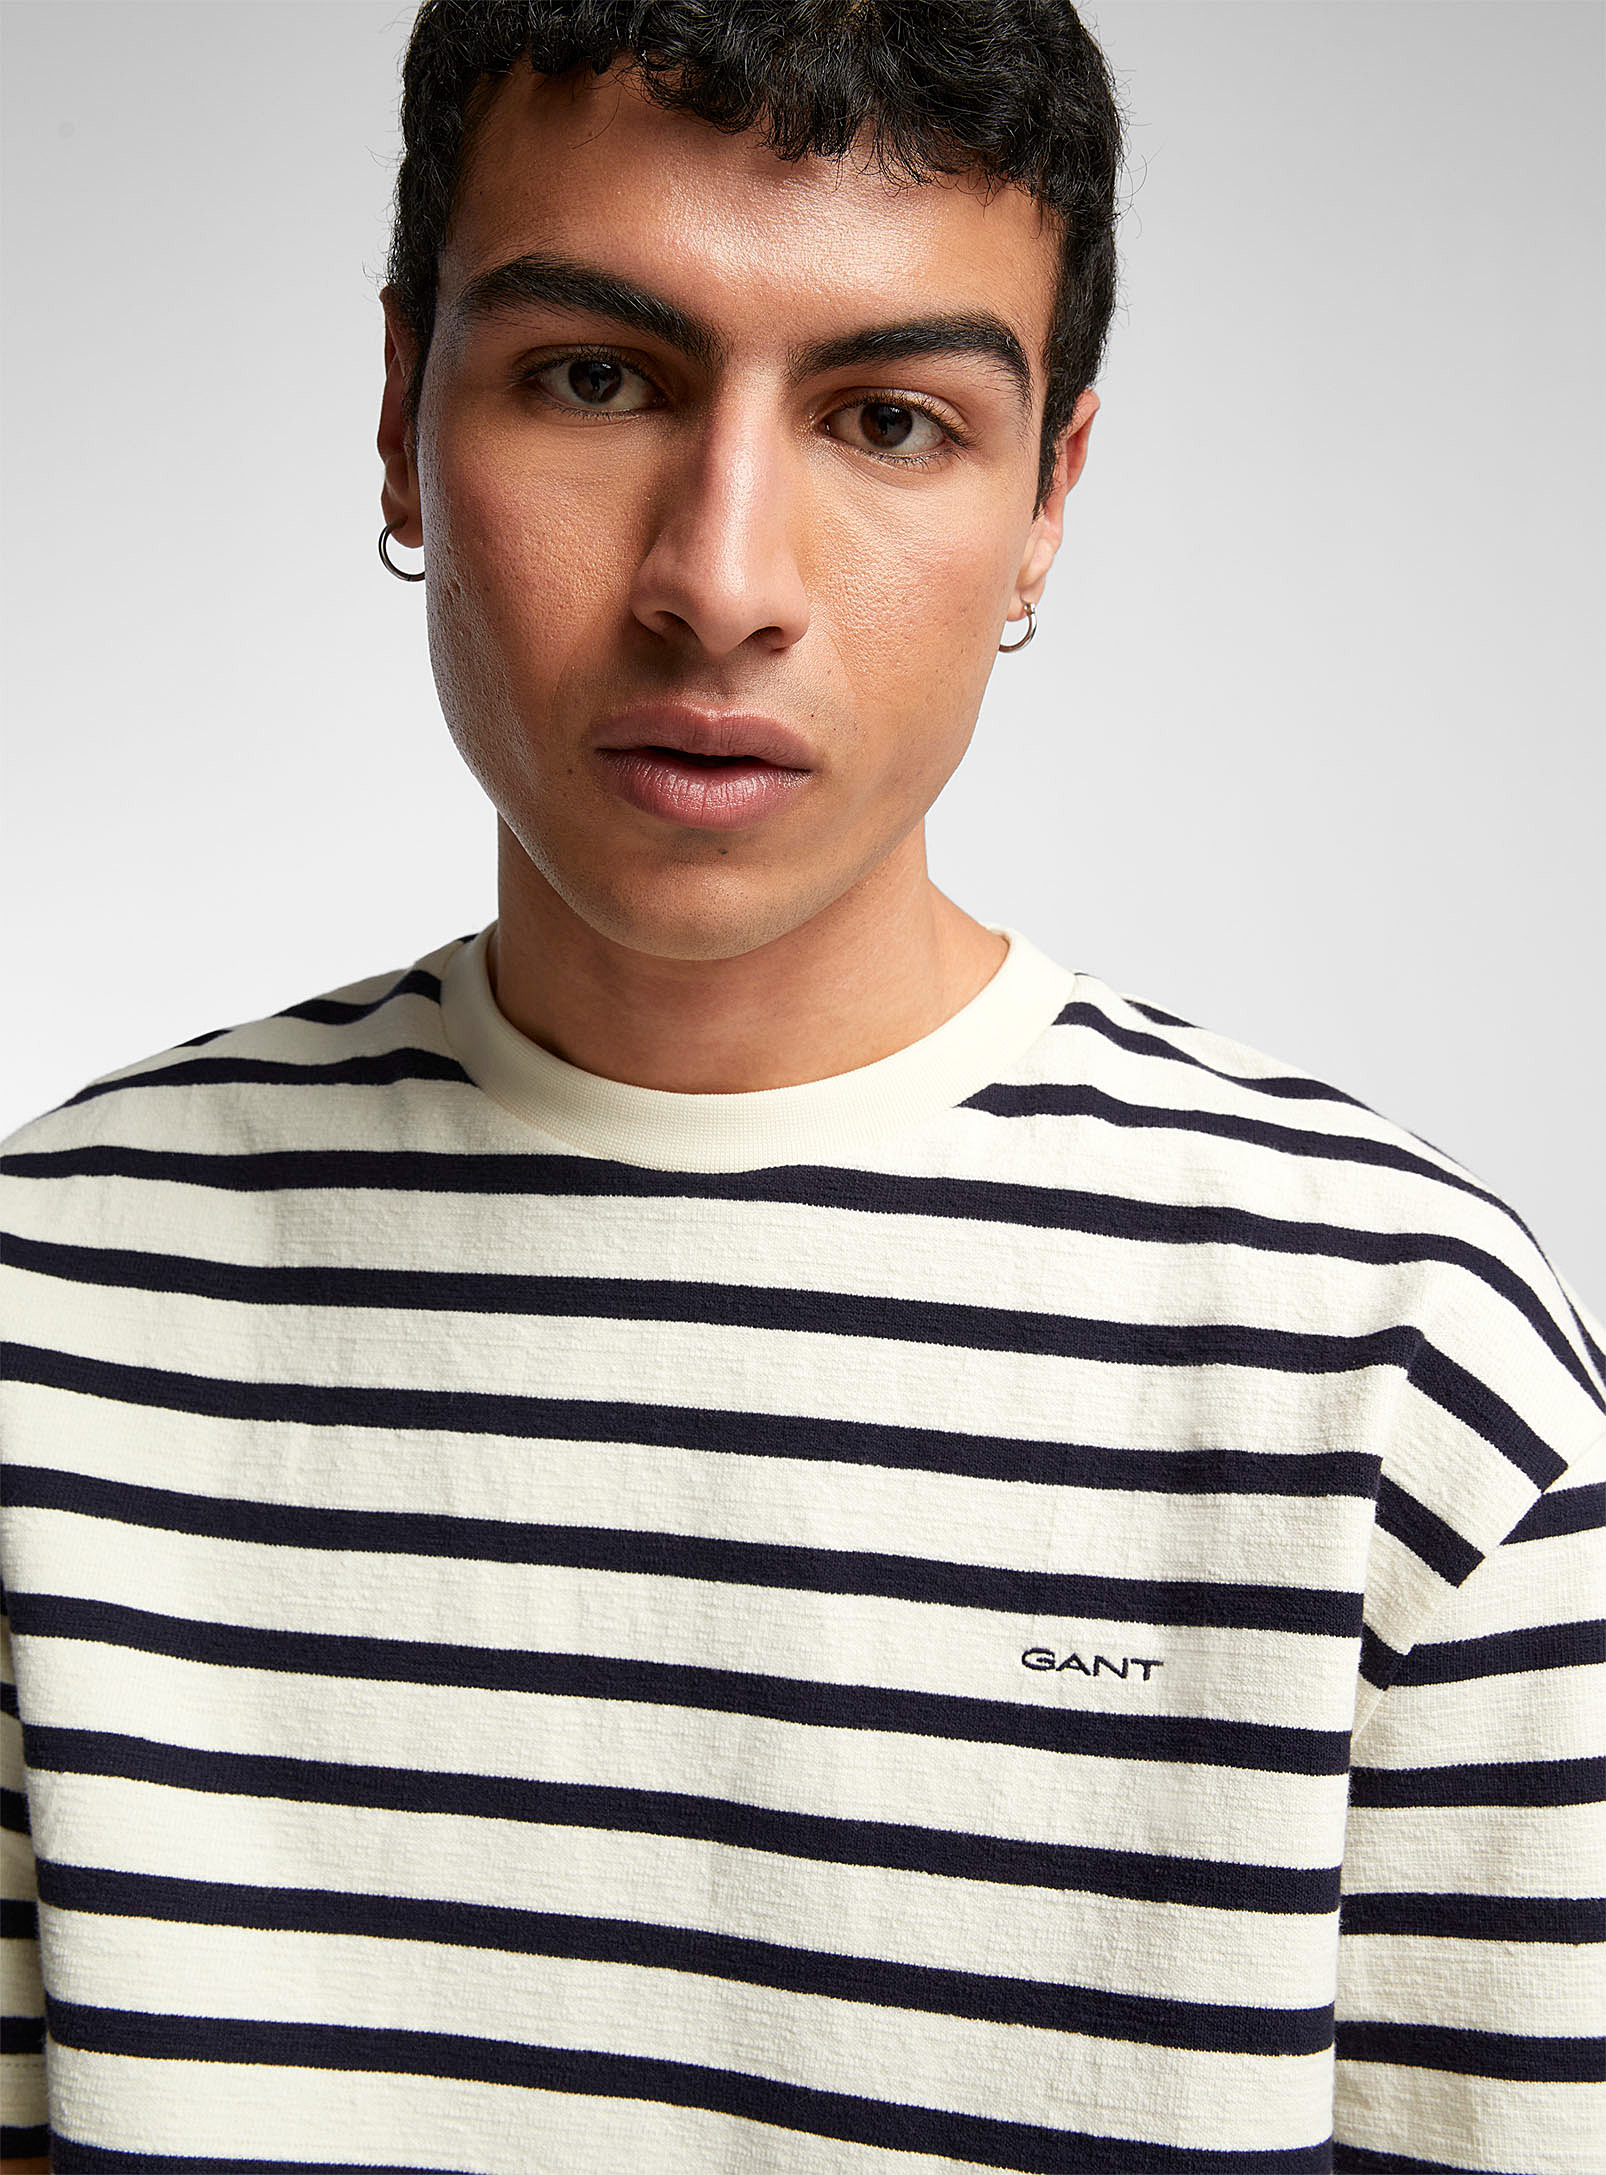 GANT - Le t-shirt rayures nautiques tricot texturé